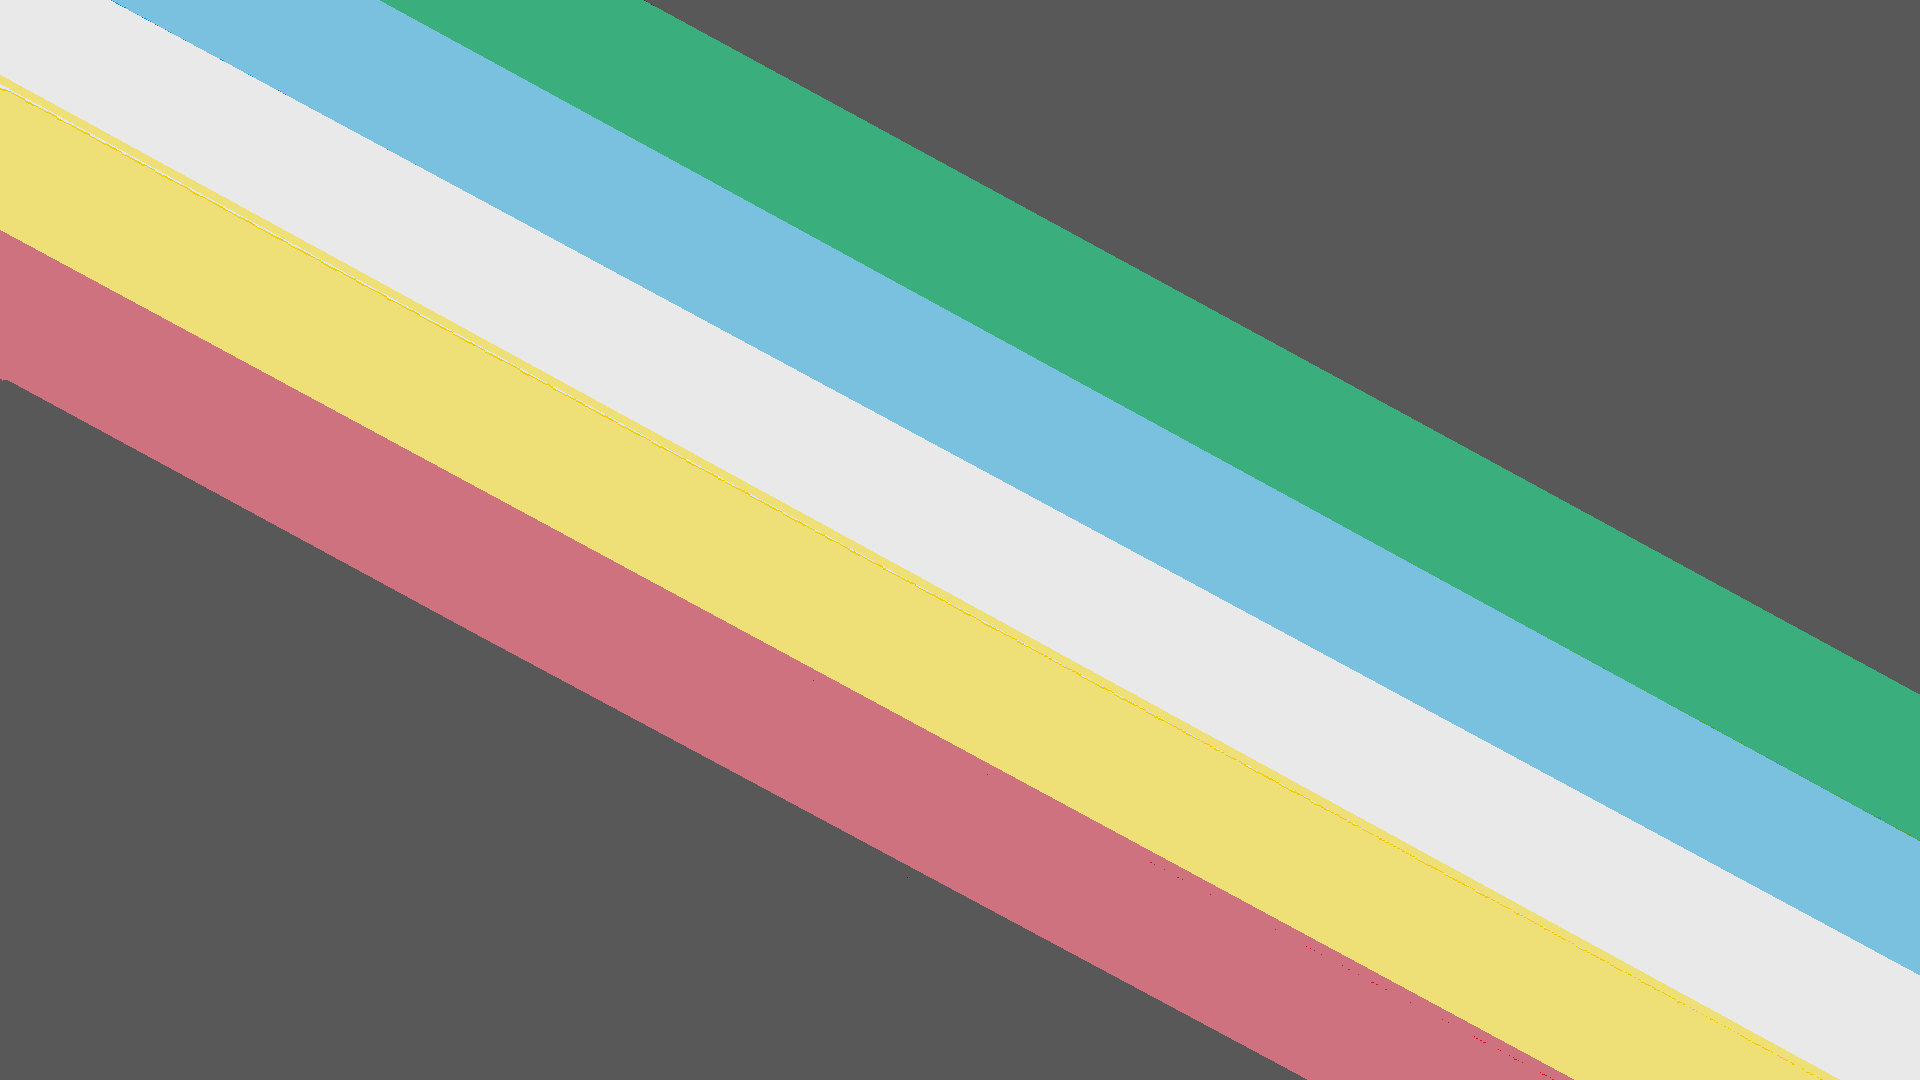 Disability Pride Flagge - eine kohlegraue Flagge mit einem diagonalen Band von der linken oberen bis zur rechten unteren Ecke, das aus fünf parallelen Streifen in Rot, Gold, Hellgrau, Blau und Grün besteht.